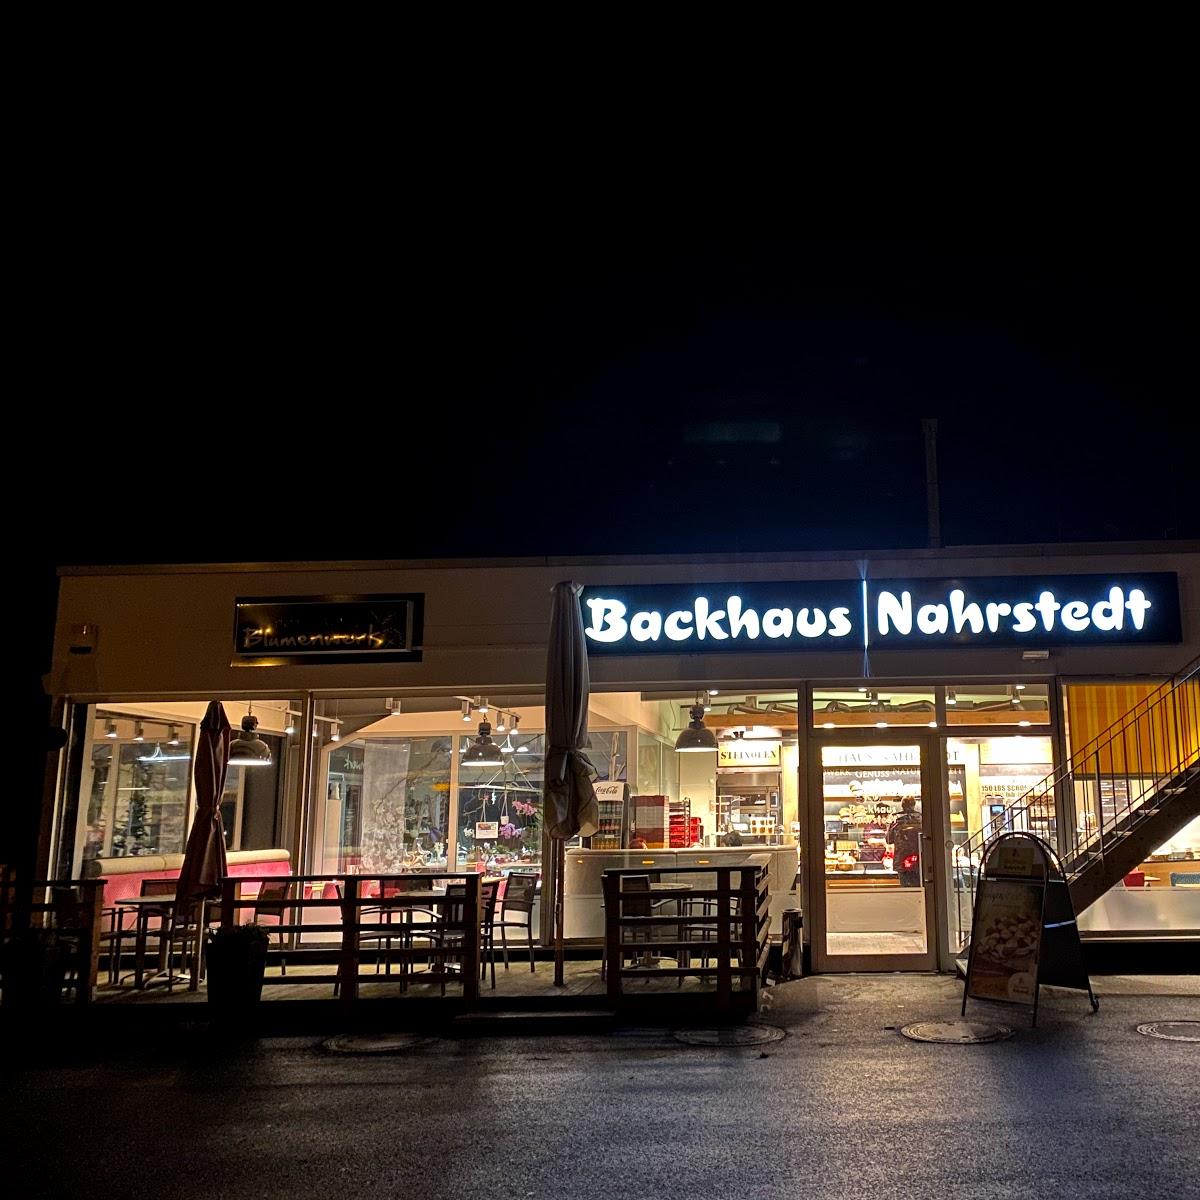 Restaurant "Backhaus Nahrstedt" in Ilmenau